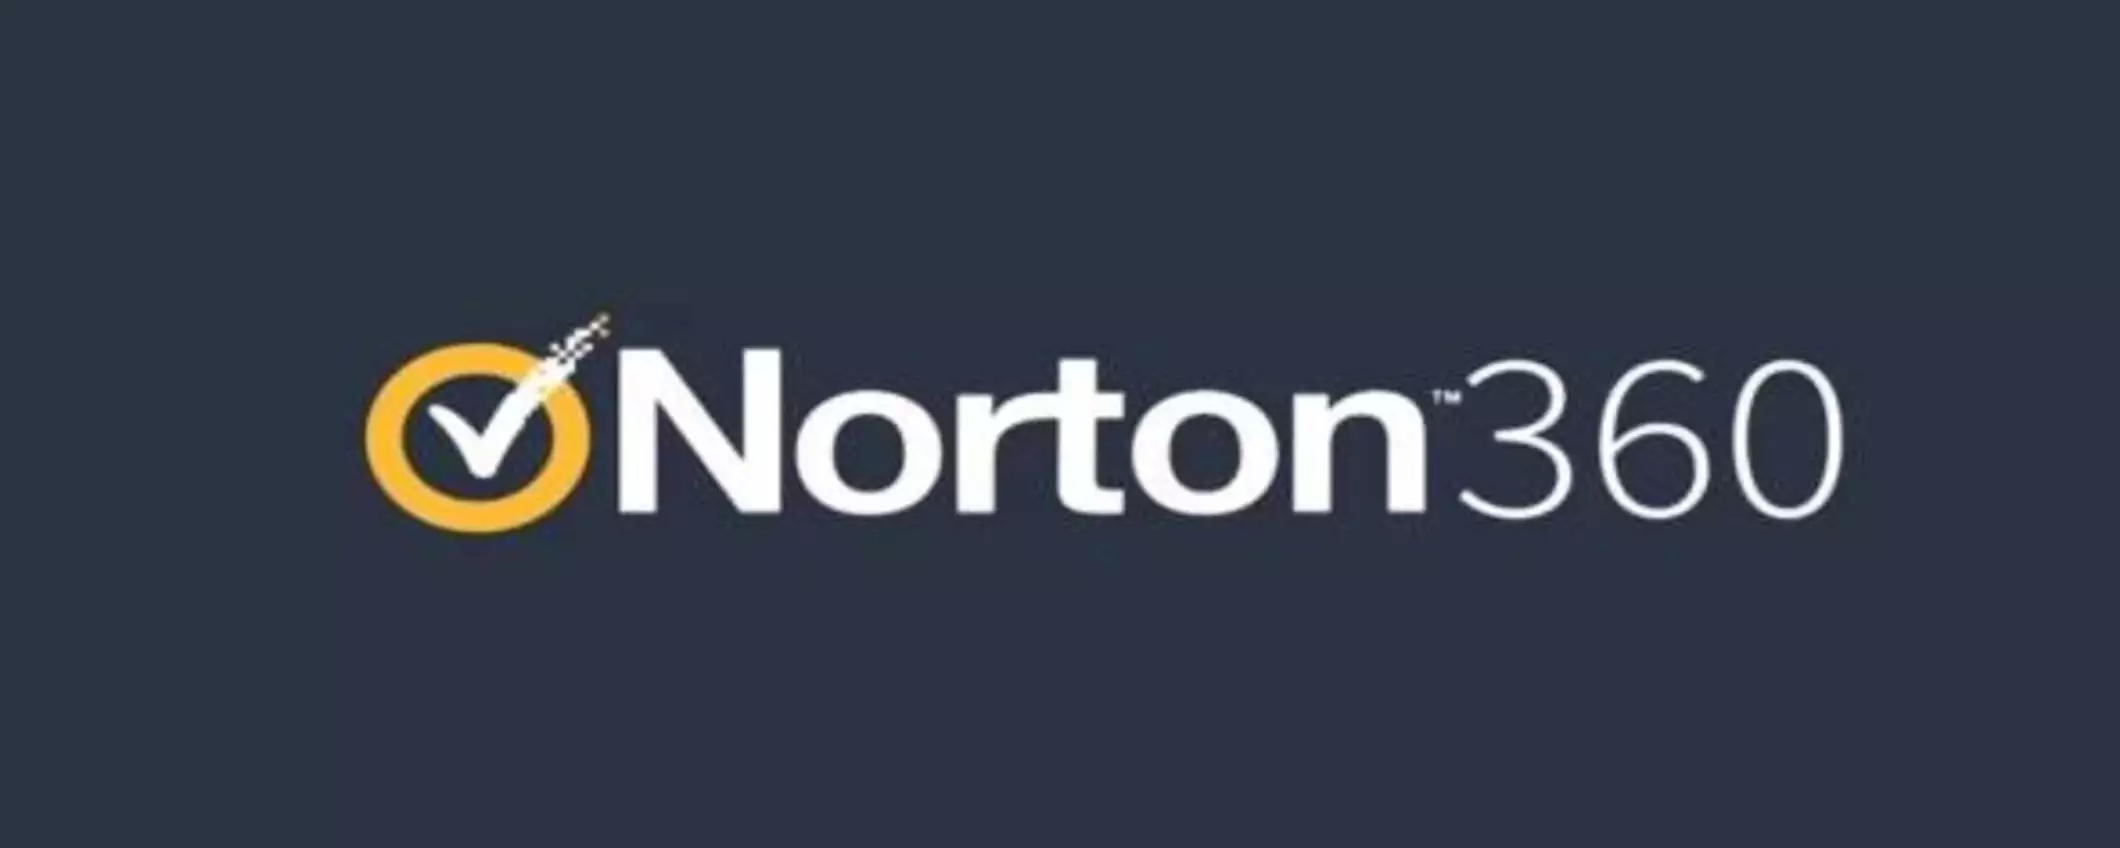 Offerta esclusiva Norton: bundle di protezione scontato del 66%